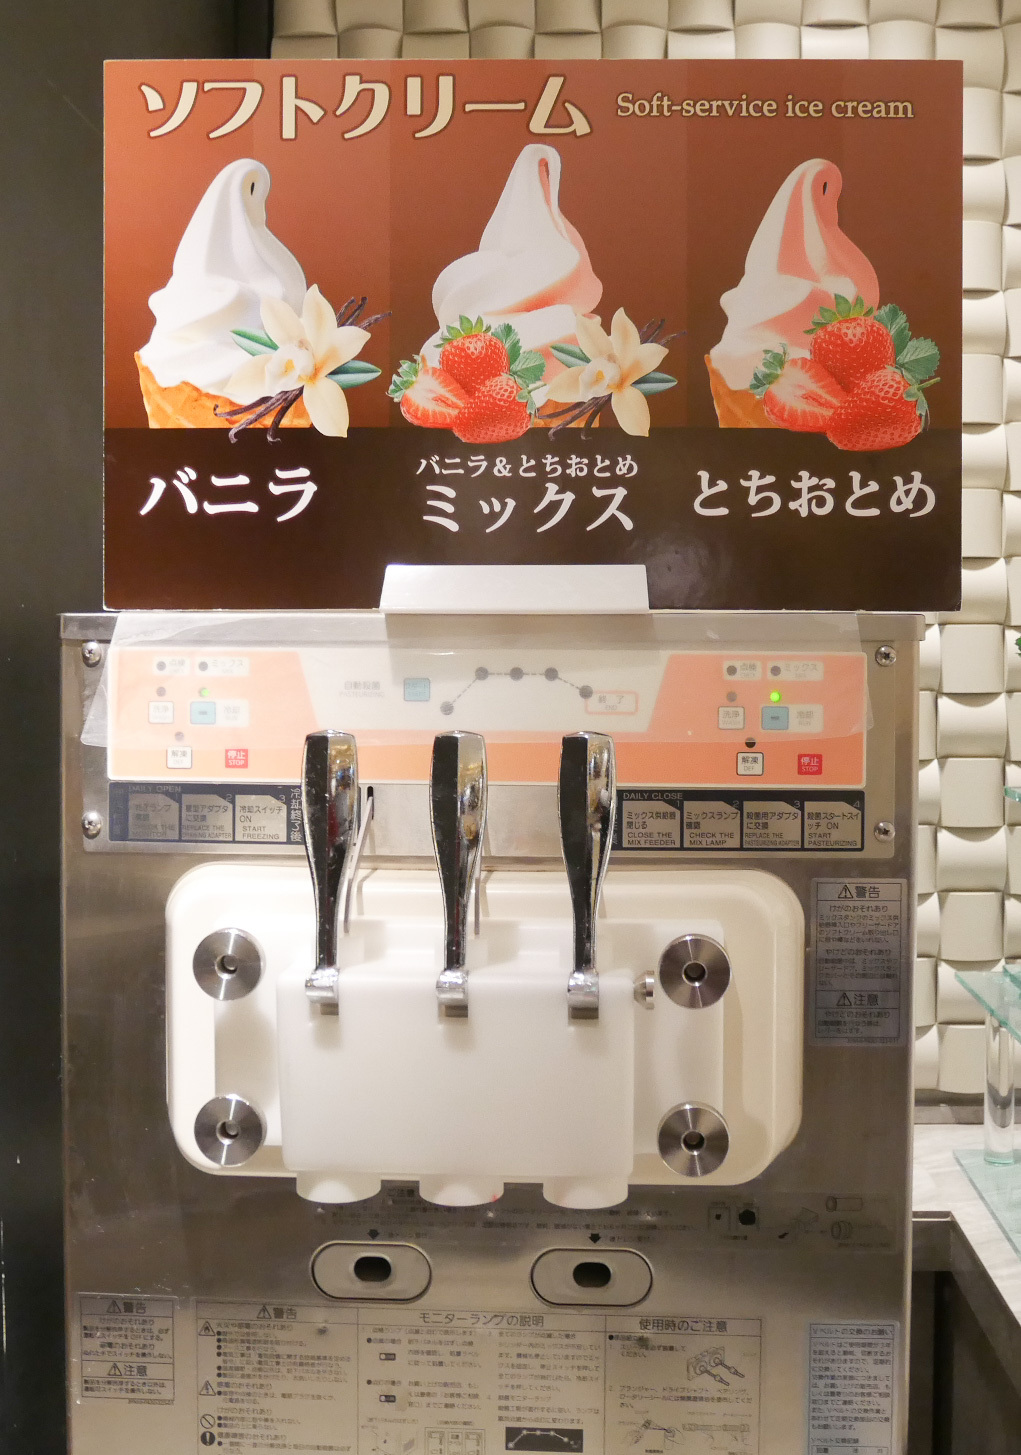 上手にソフトクリームを作れるかな？